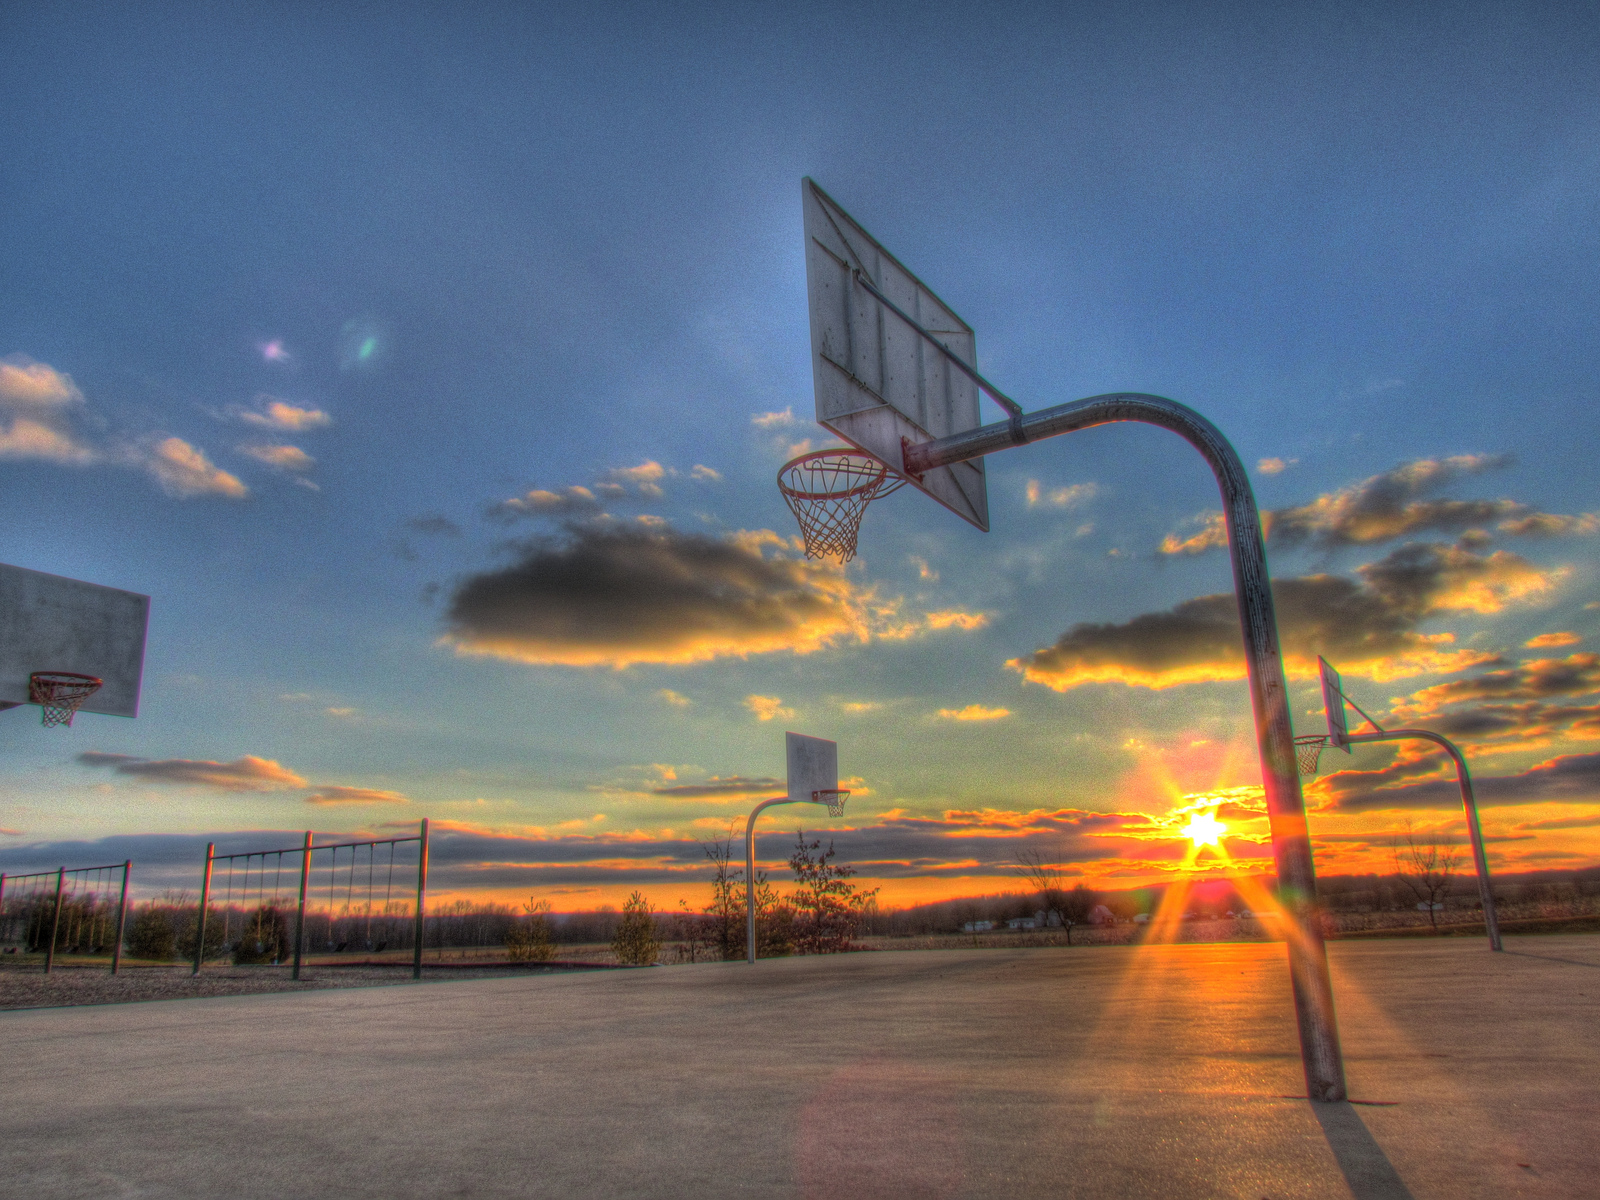 バスケット壁紙hd,空,雲,バスケットボールのコート,バスケットボール,朝